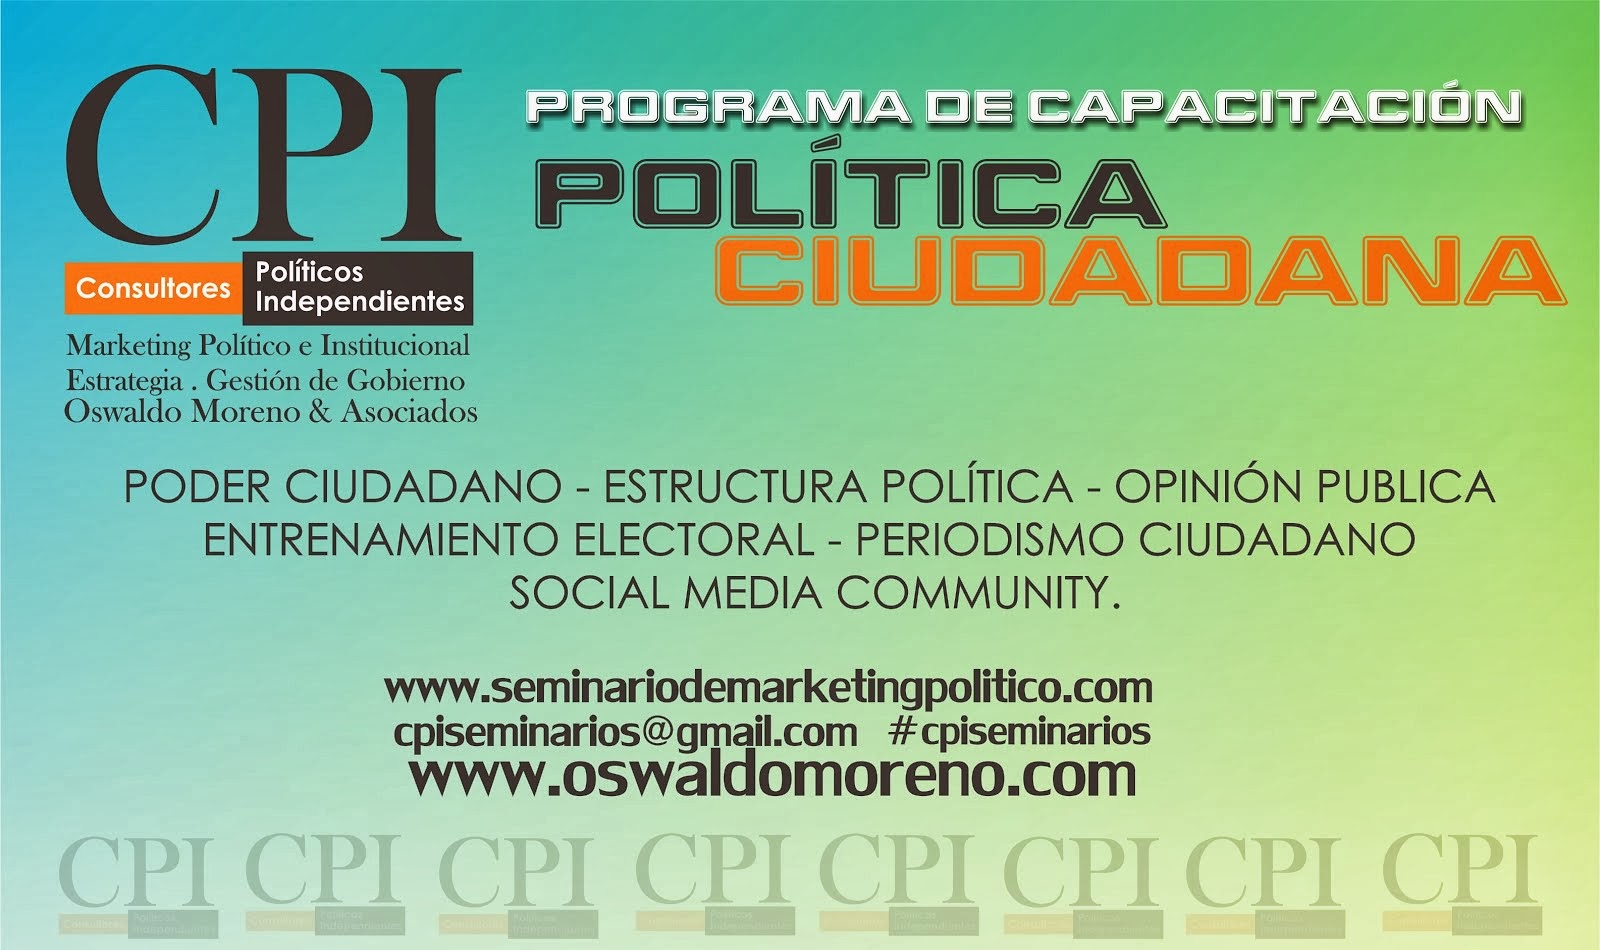 CPC de CPI Latinoamerica